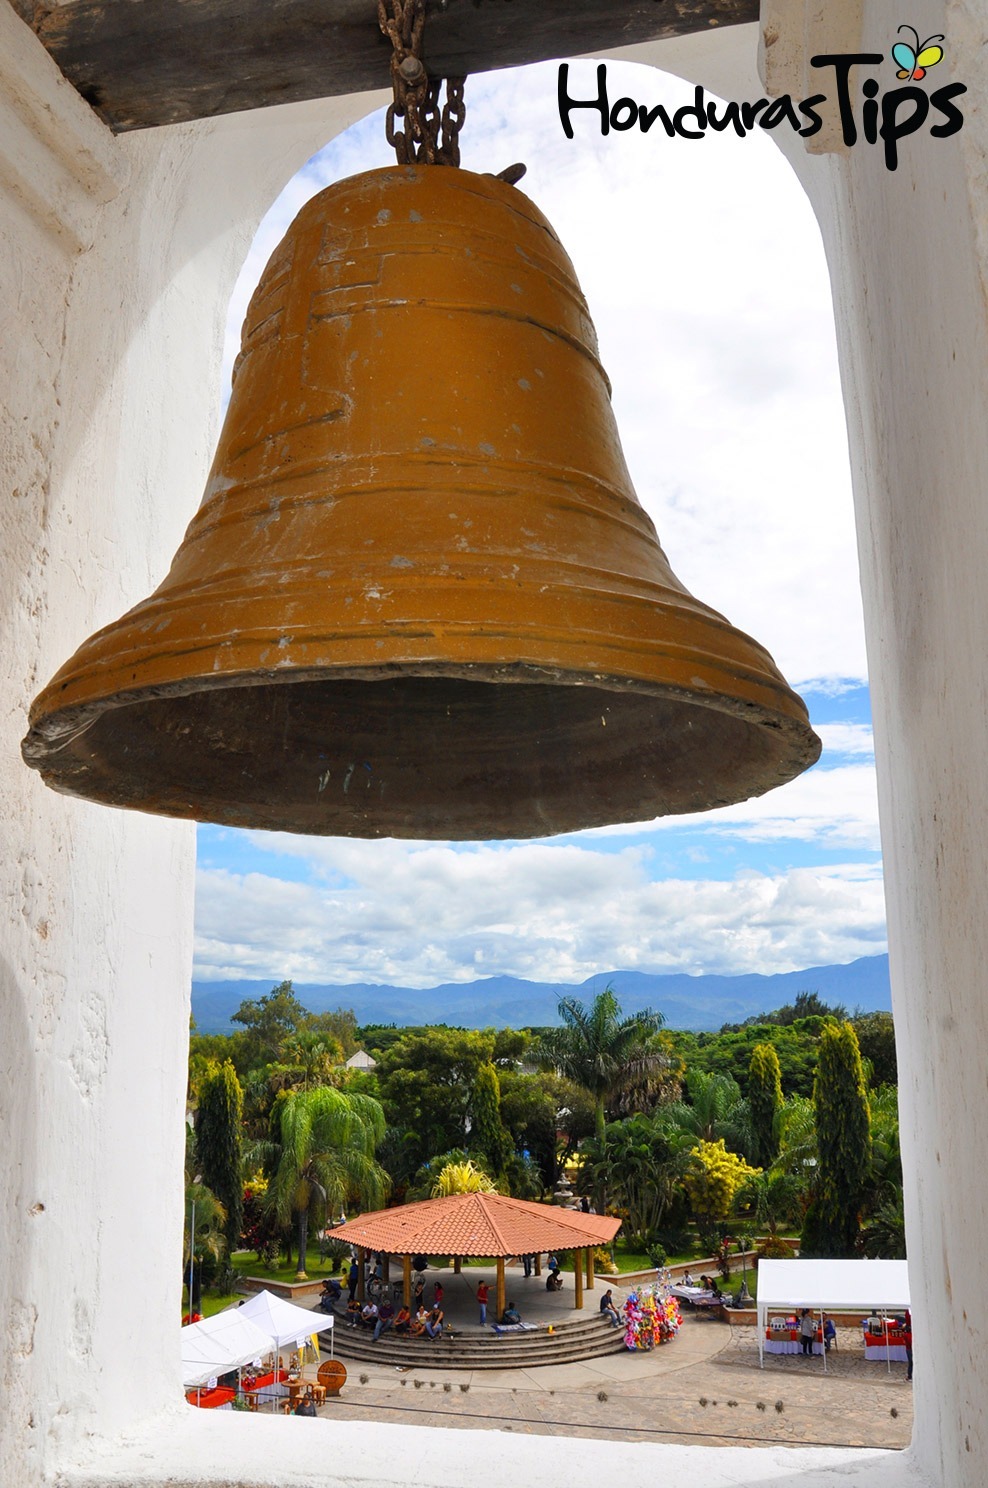 La Paz se caracteriza por mantener las tradiciones hondureñas. 